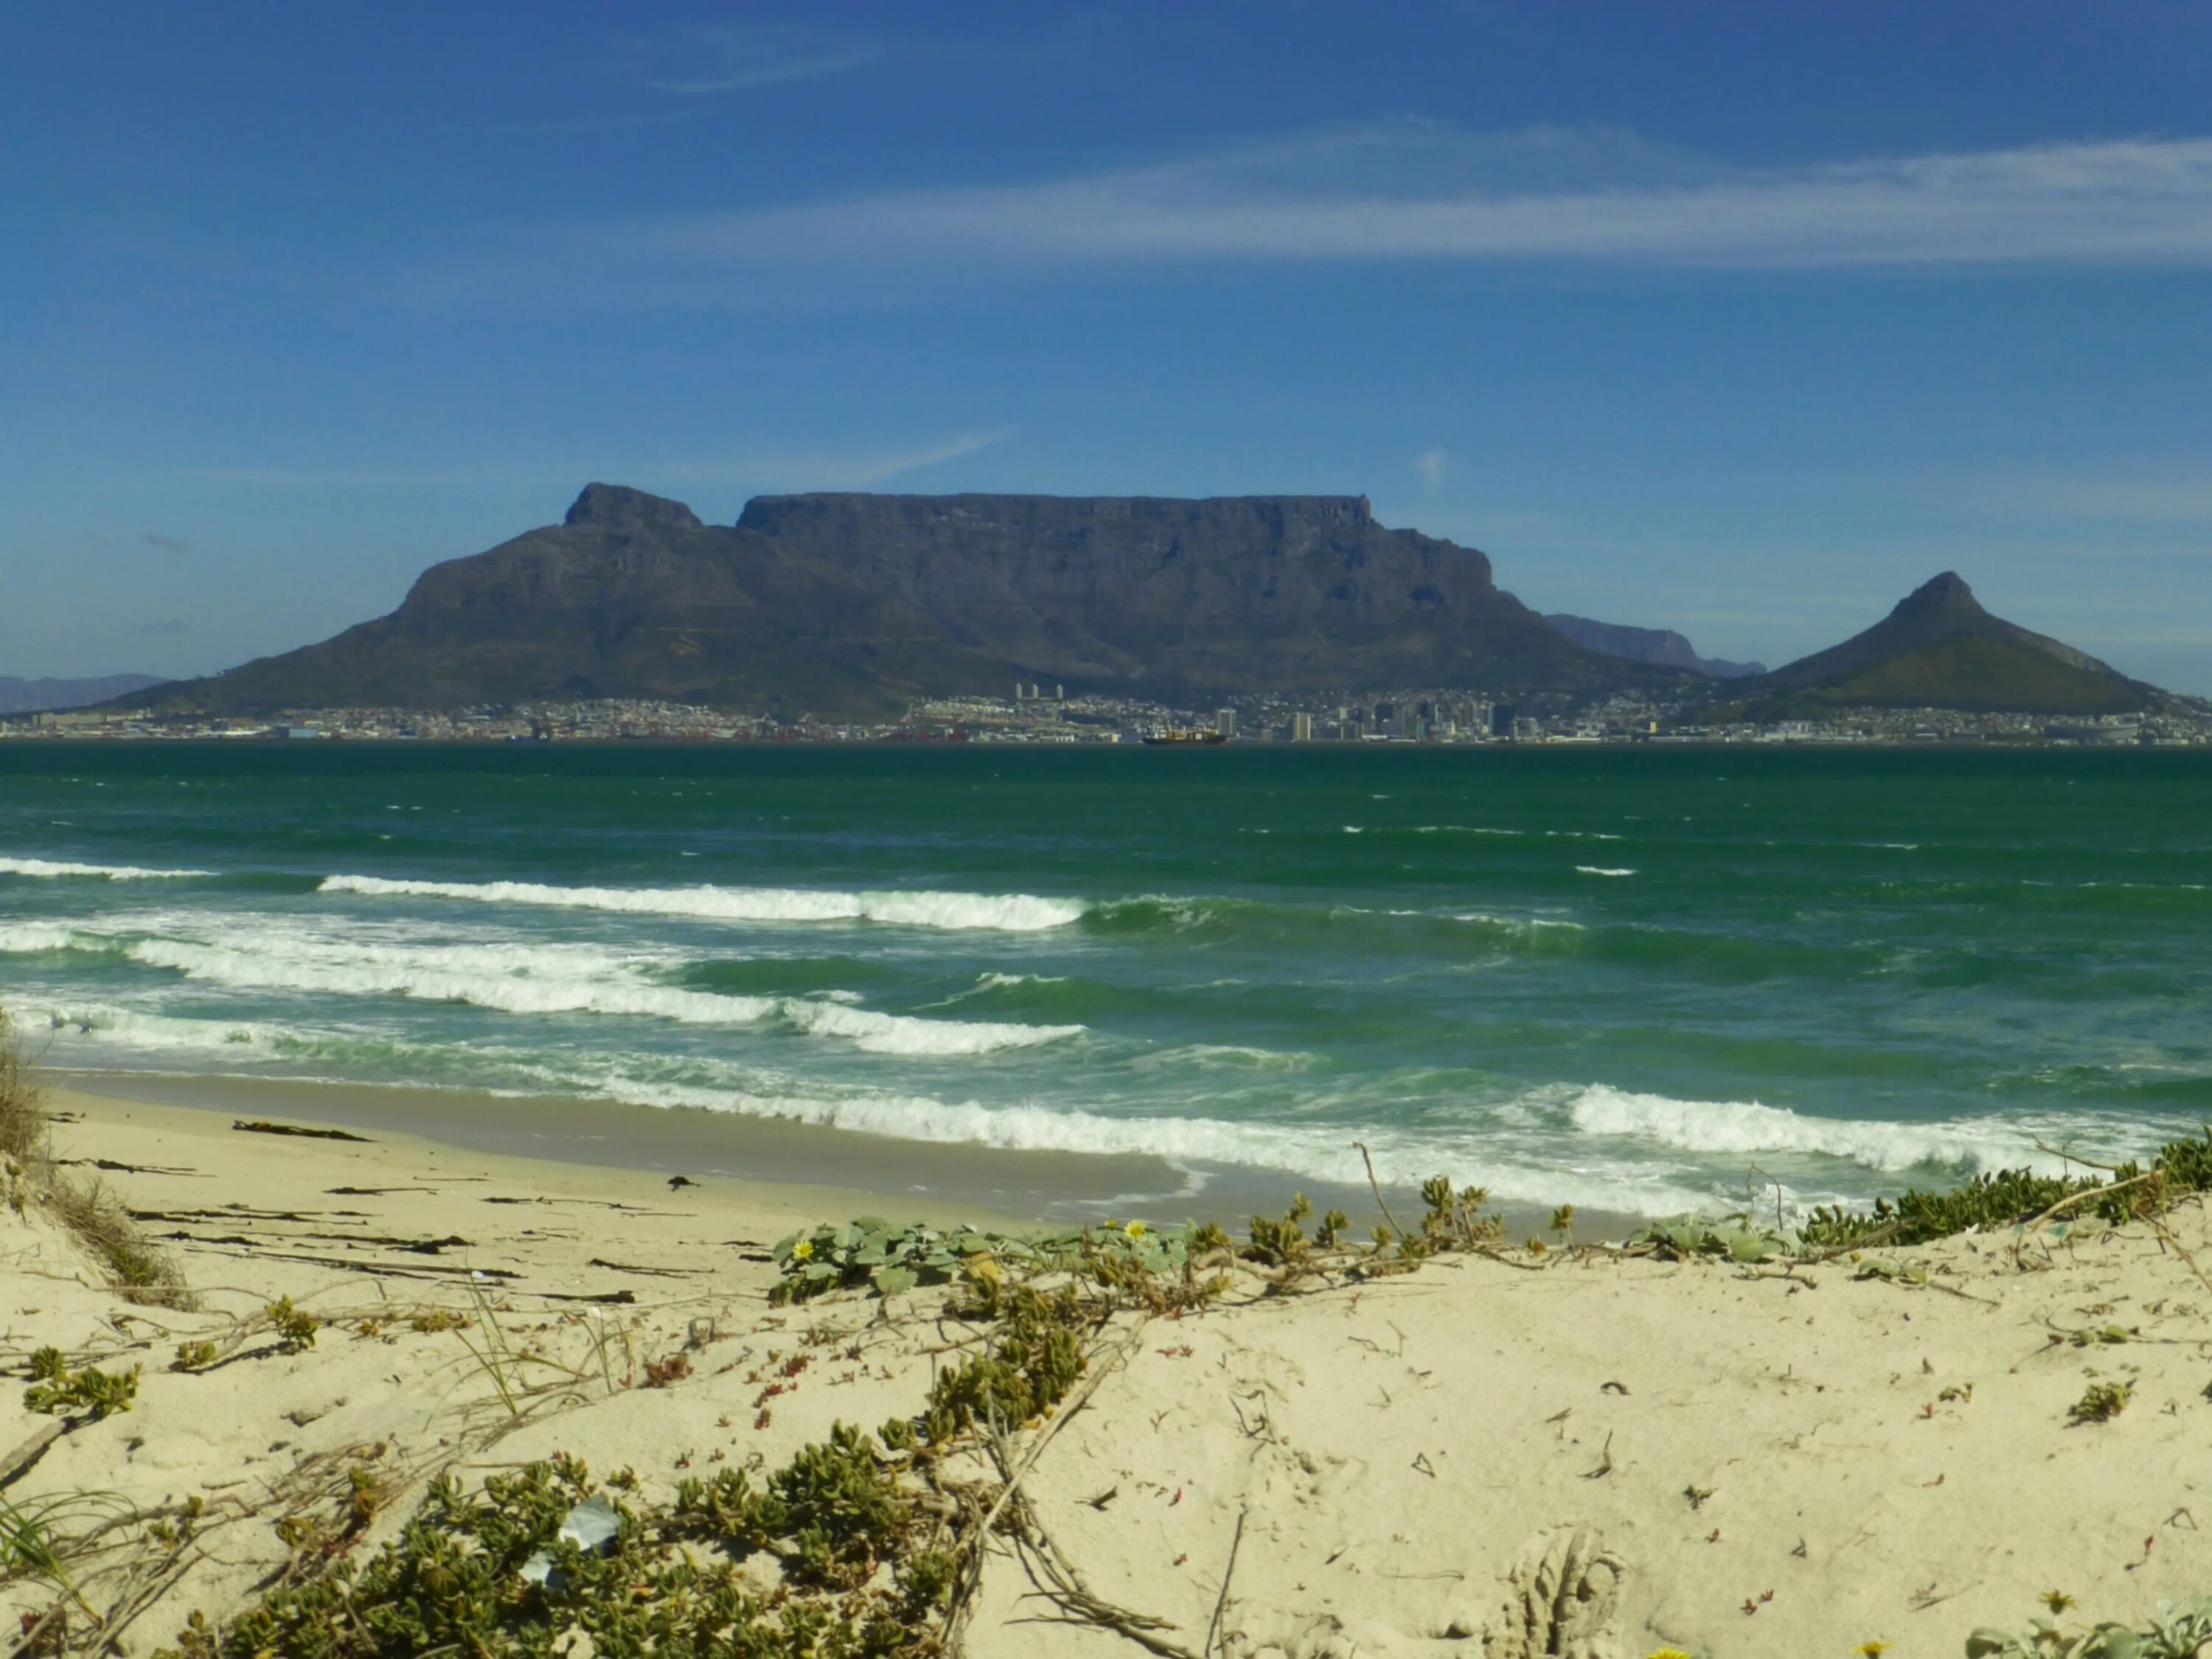 Океан на юге африки. Столовая гора, Кейптаун, Южная Африка. Кейптаун ЮАР океан. Столовая гора ЮАР. Кейптаун ЮАР столовая гора и мыс доброй надежды.